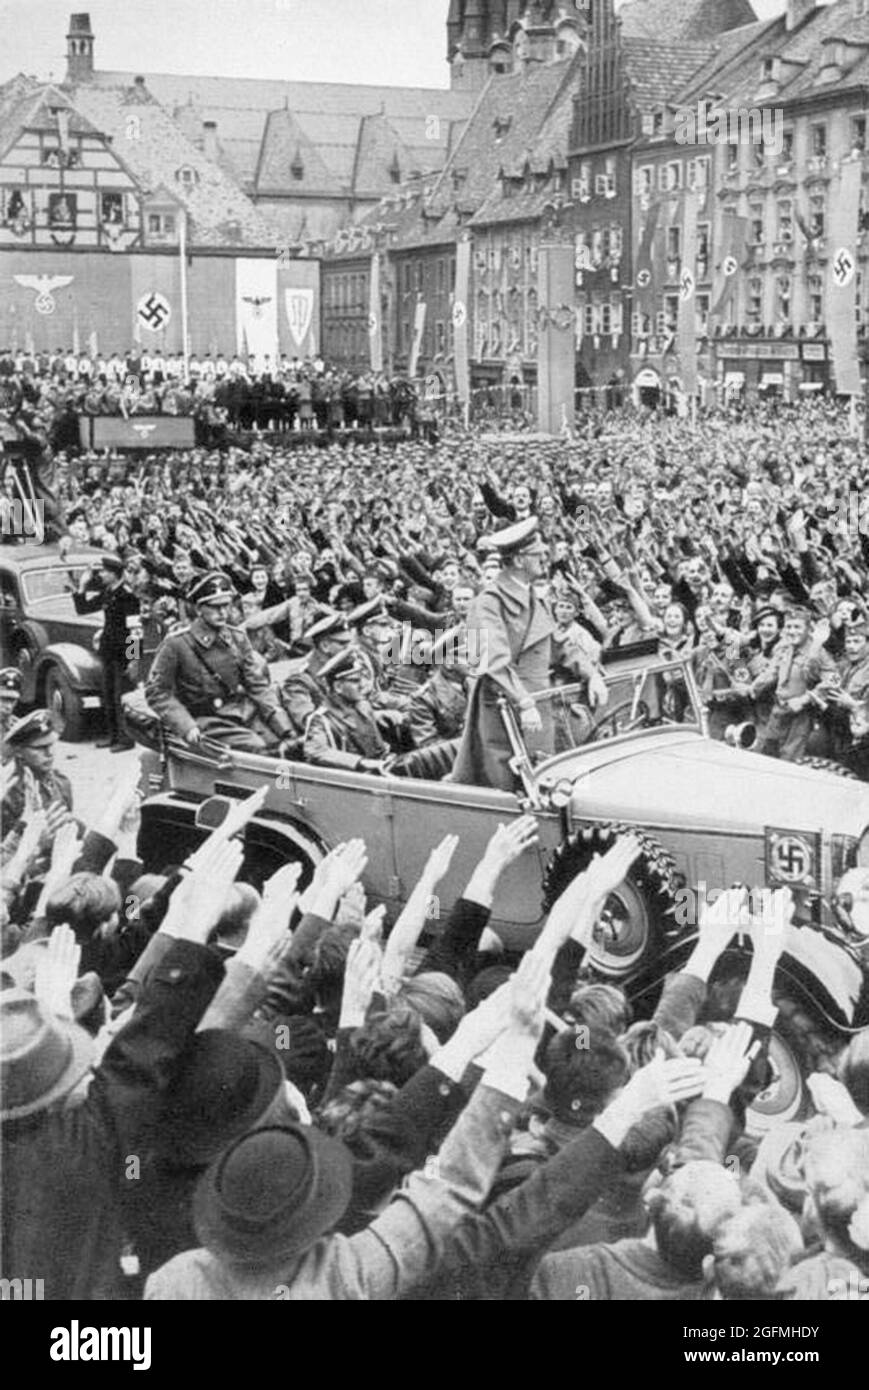 Les foules qui applaudissent et saluent Hitler accueillent dans la ville d'Eger dans les Sudètes (aujourd'hui Chebb en République tchèque). Crédit: Bundesarchiv allemand Banque D'Images